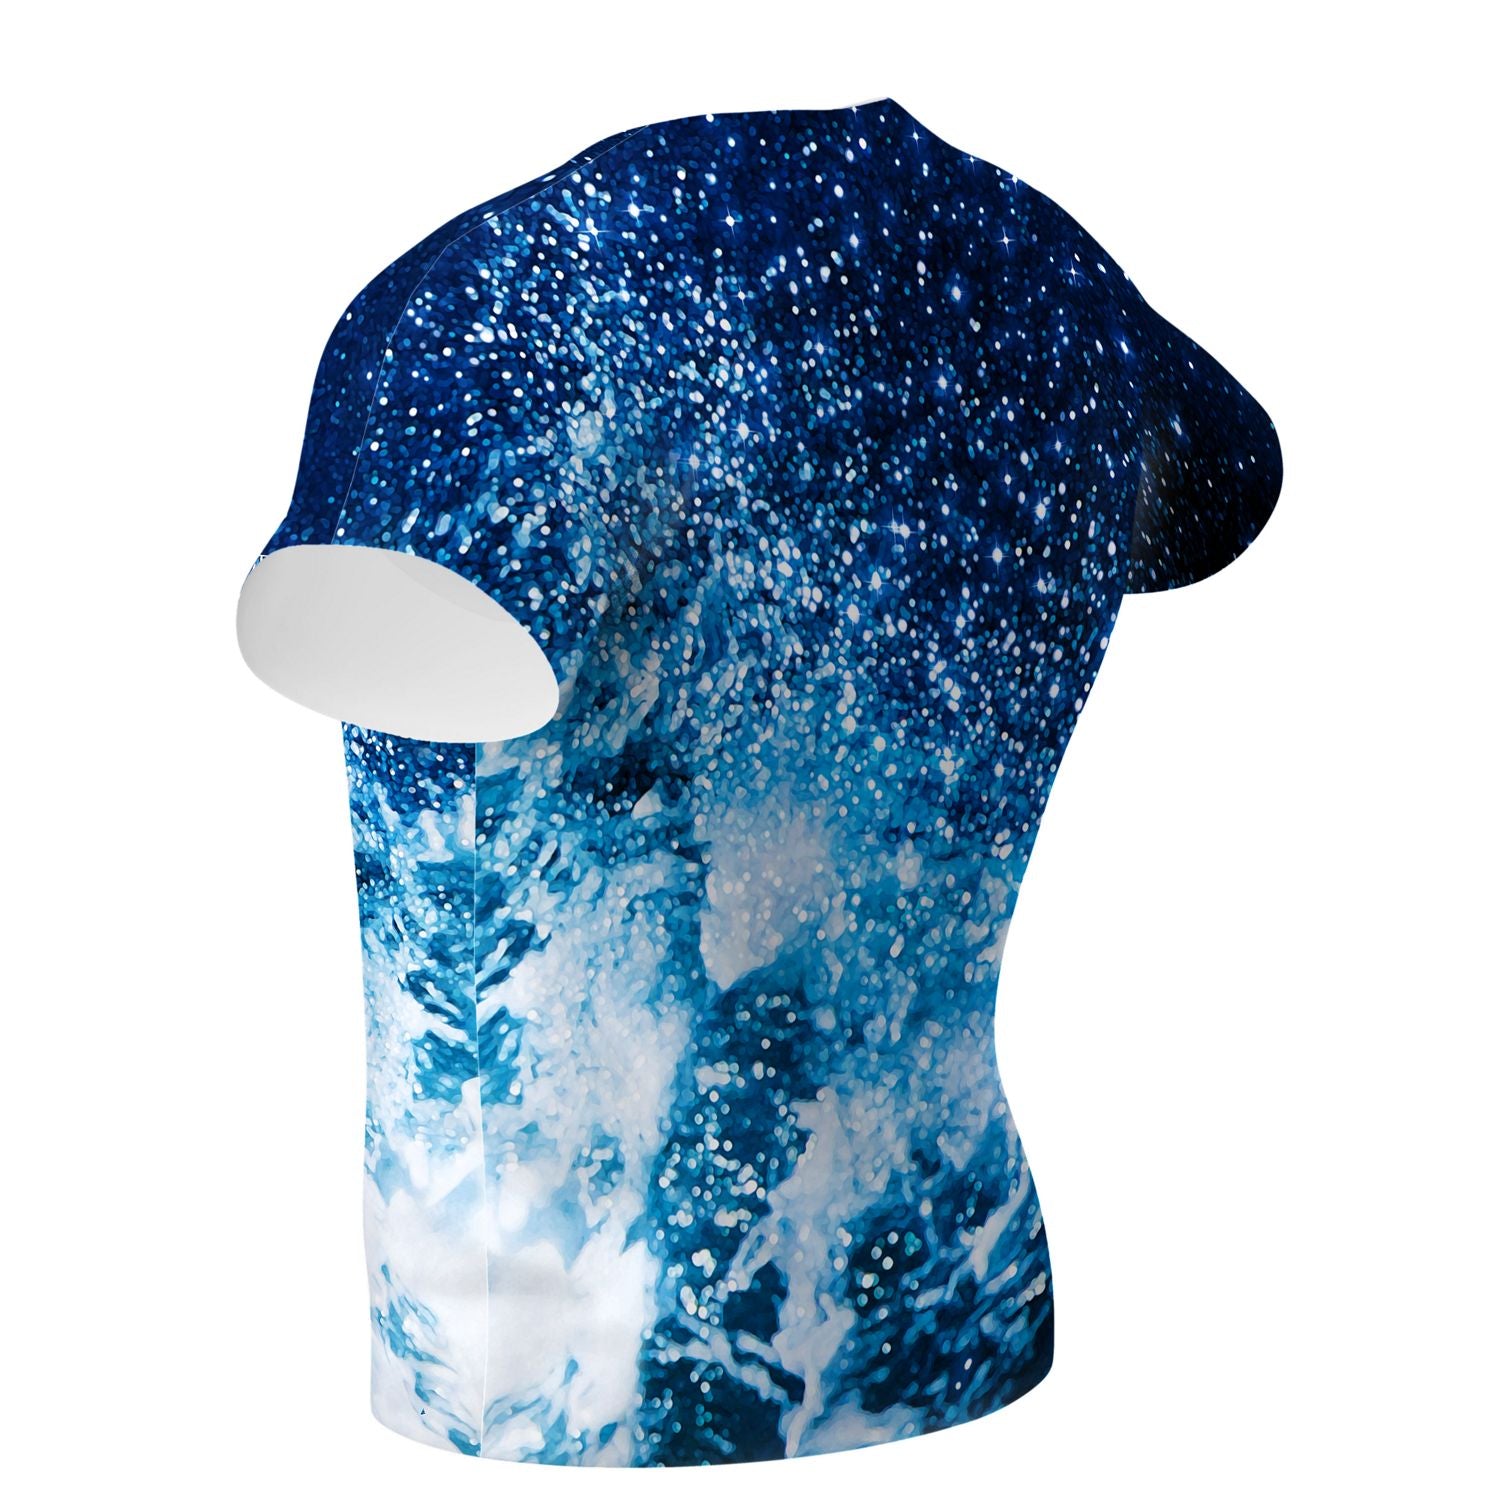 Cosmic Waves Performance Shirt - Q Swimwear